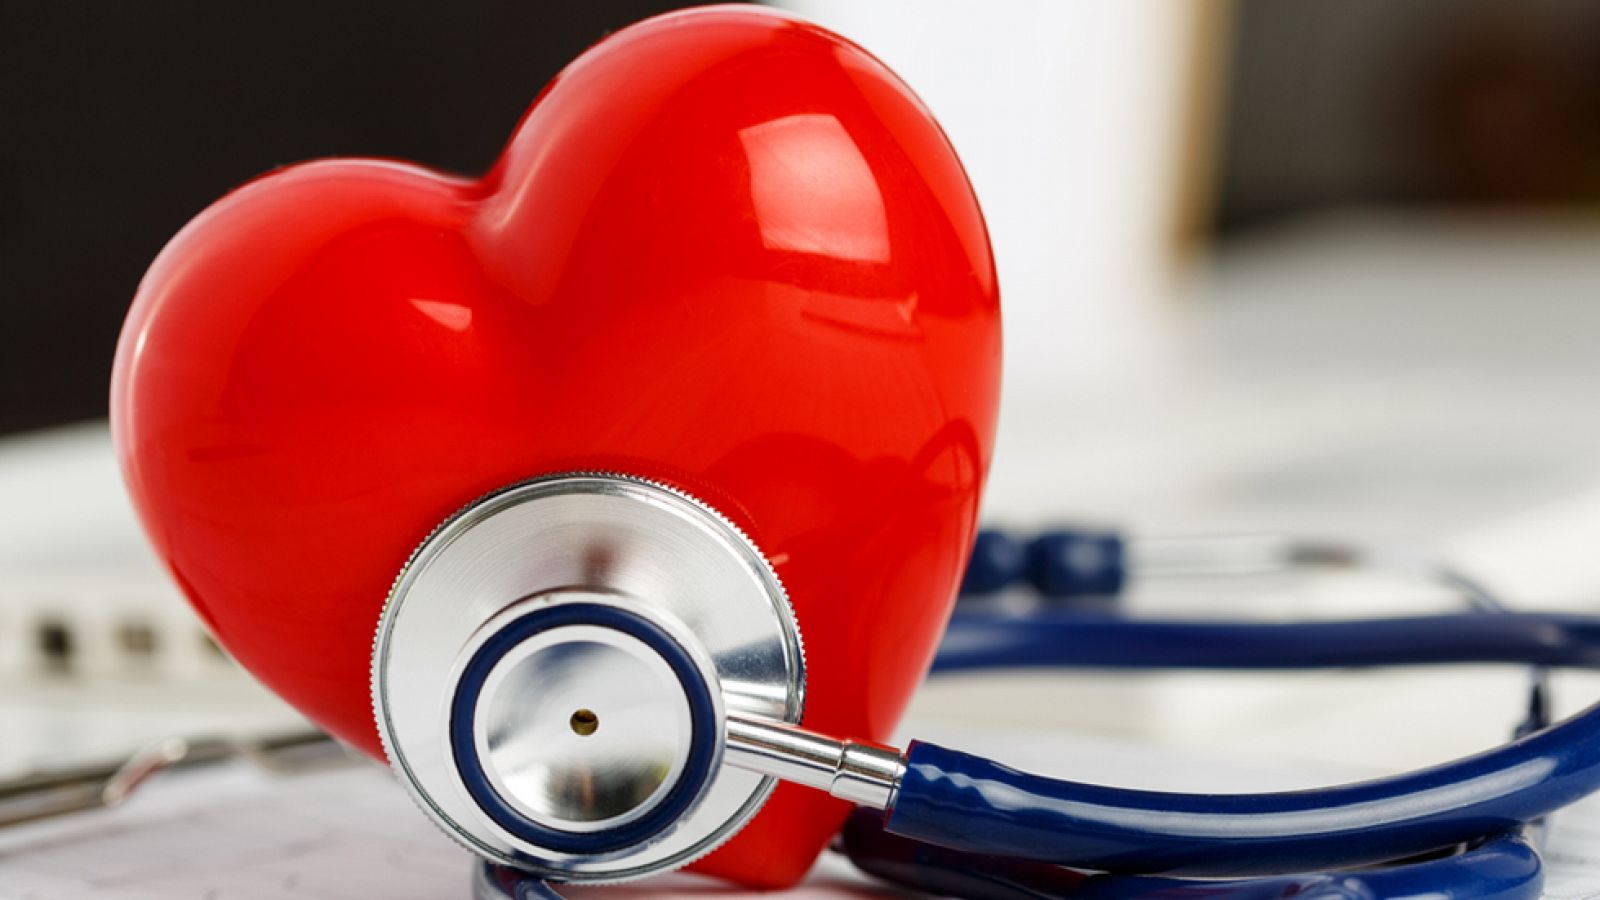 Saber vivir - Sistema Cardiovascular  - Consejos para mantener un corazón sano